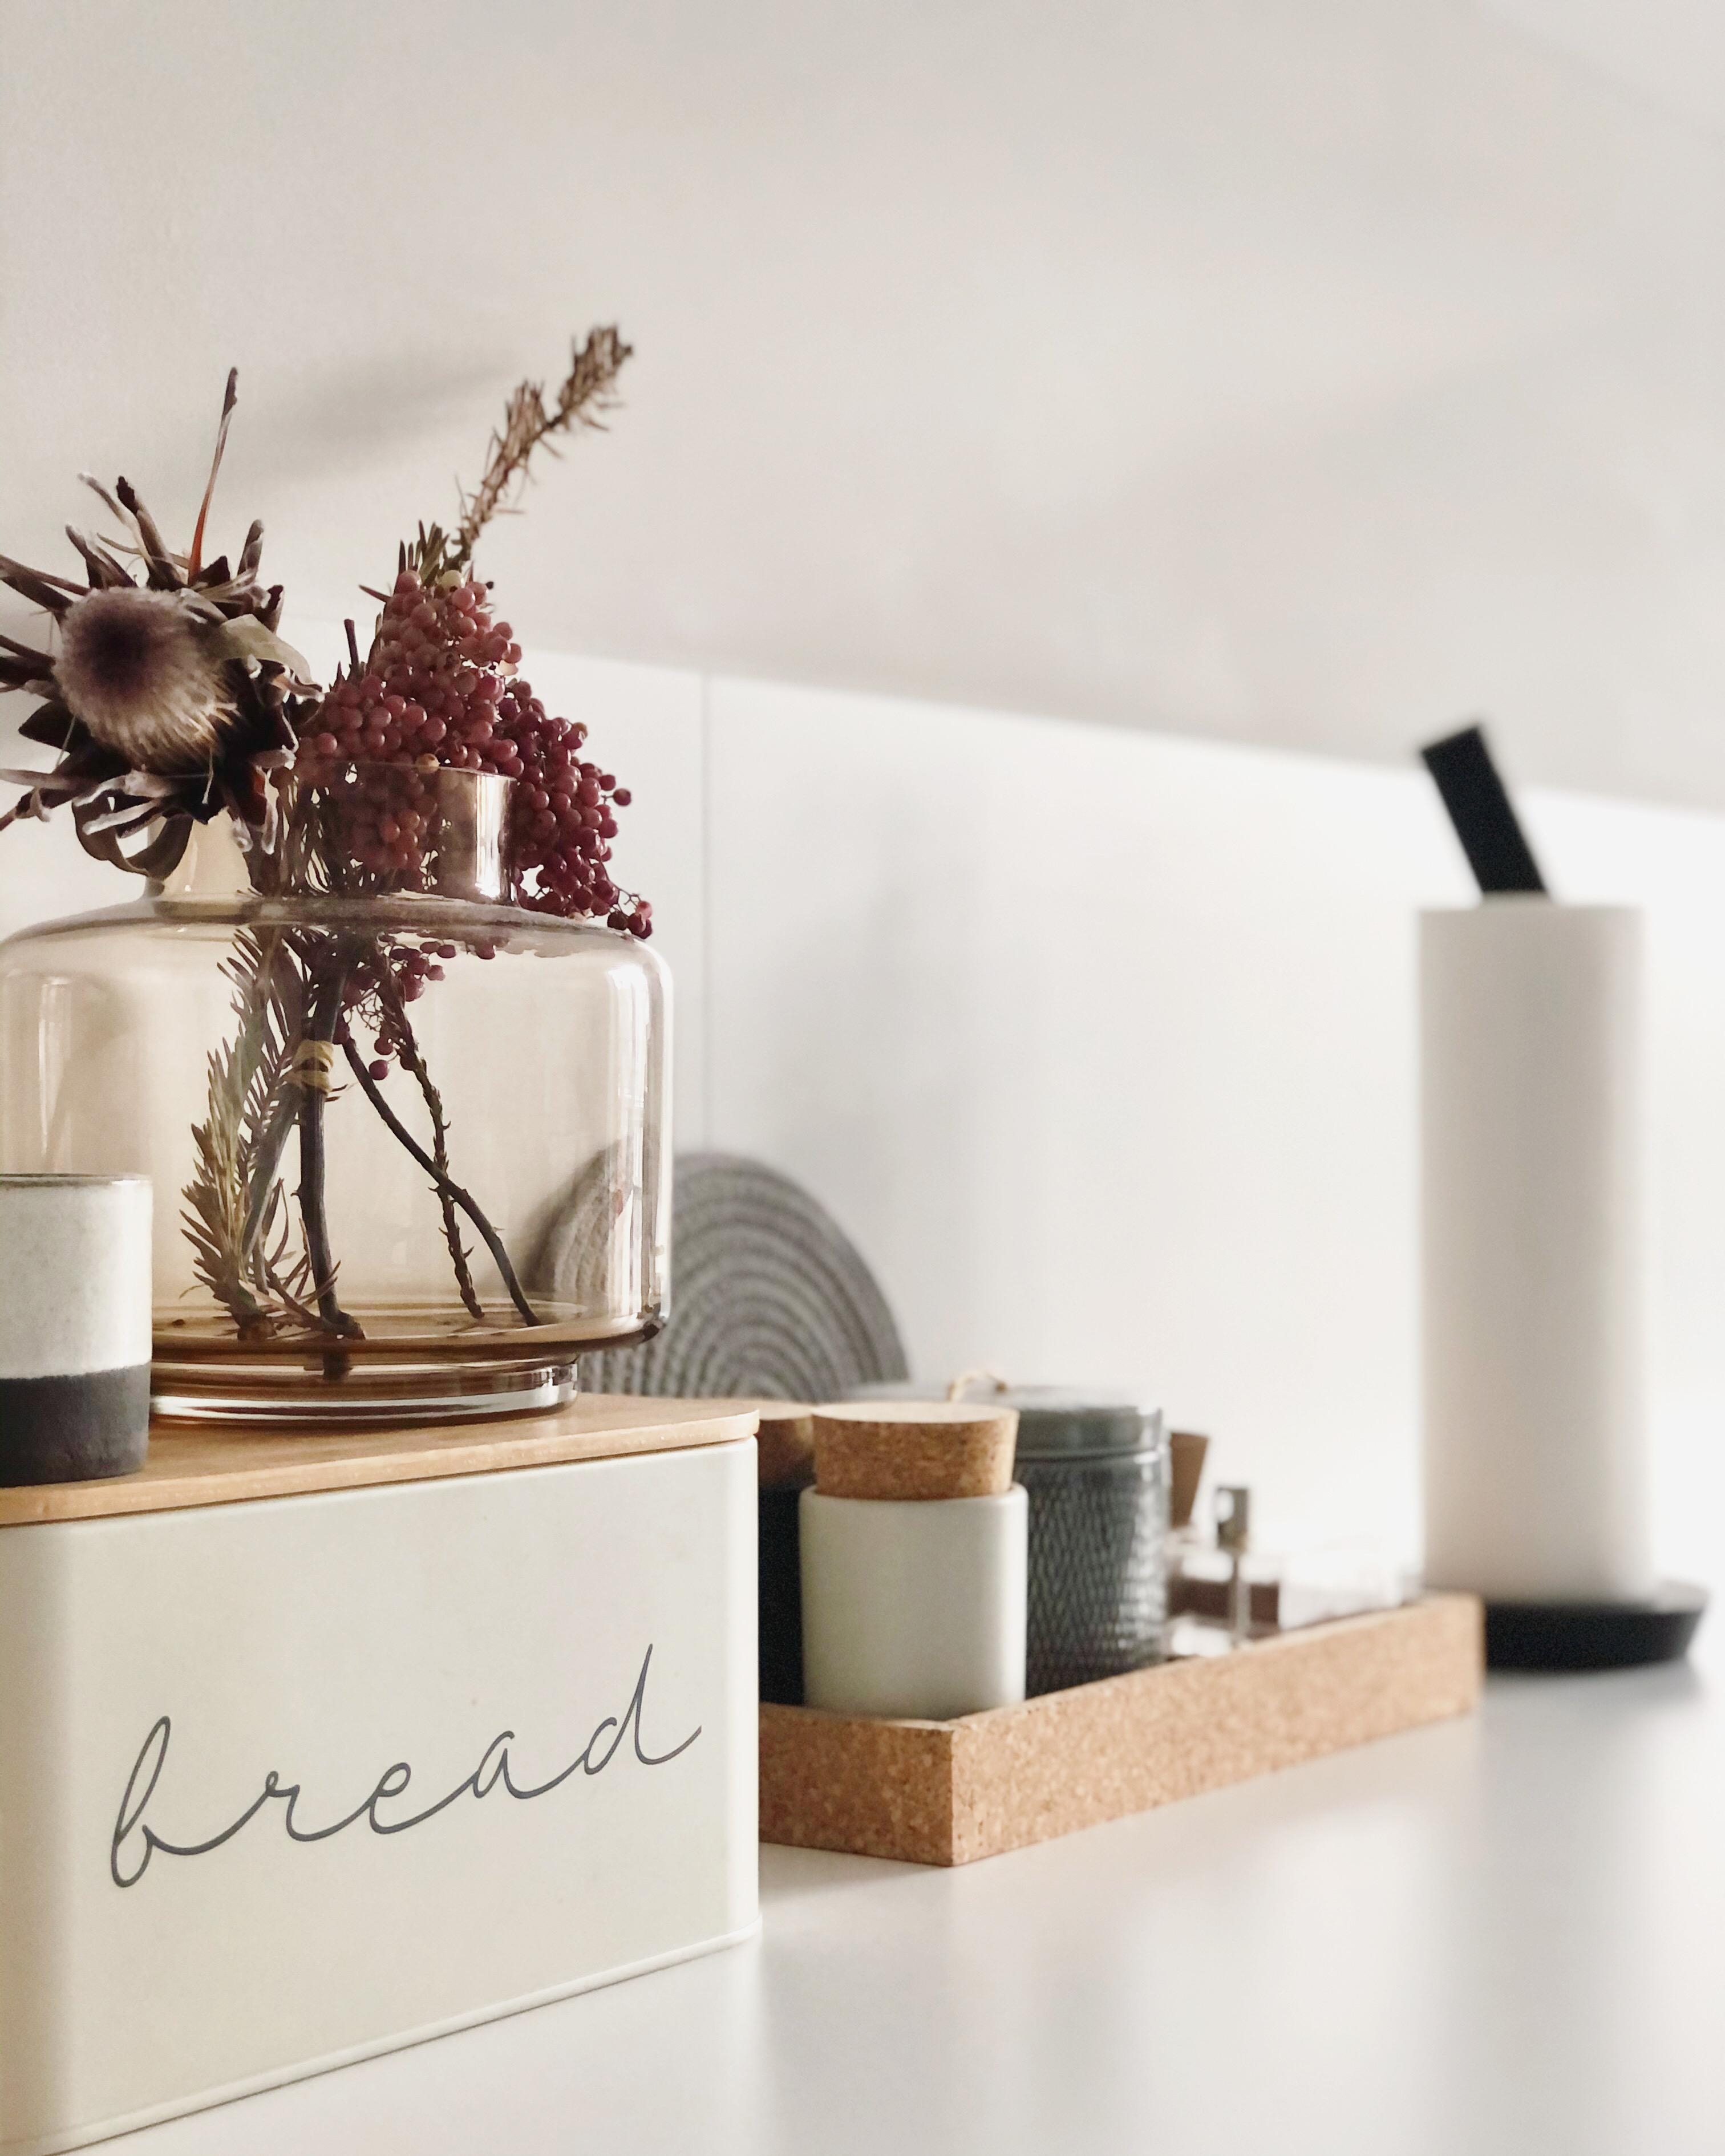 #home #homedecor #minimalism #dekoidee #decoration #kitchen #cozy #cozyhome #hygge #scandi #couchstyle